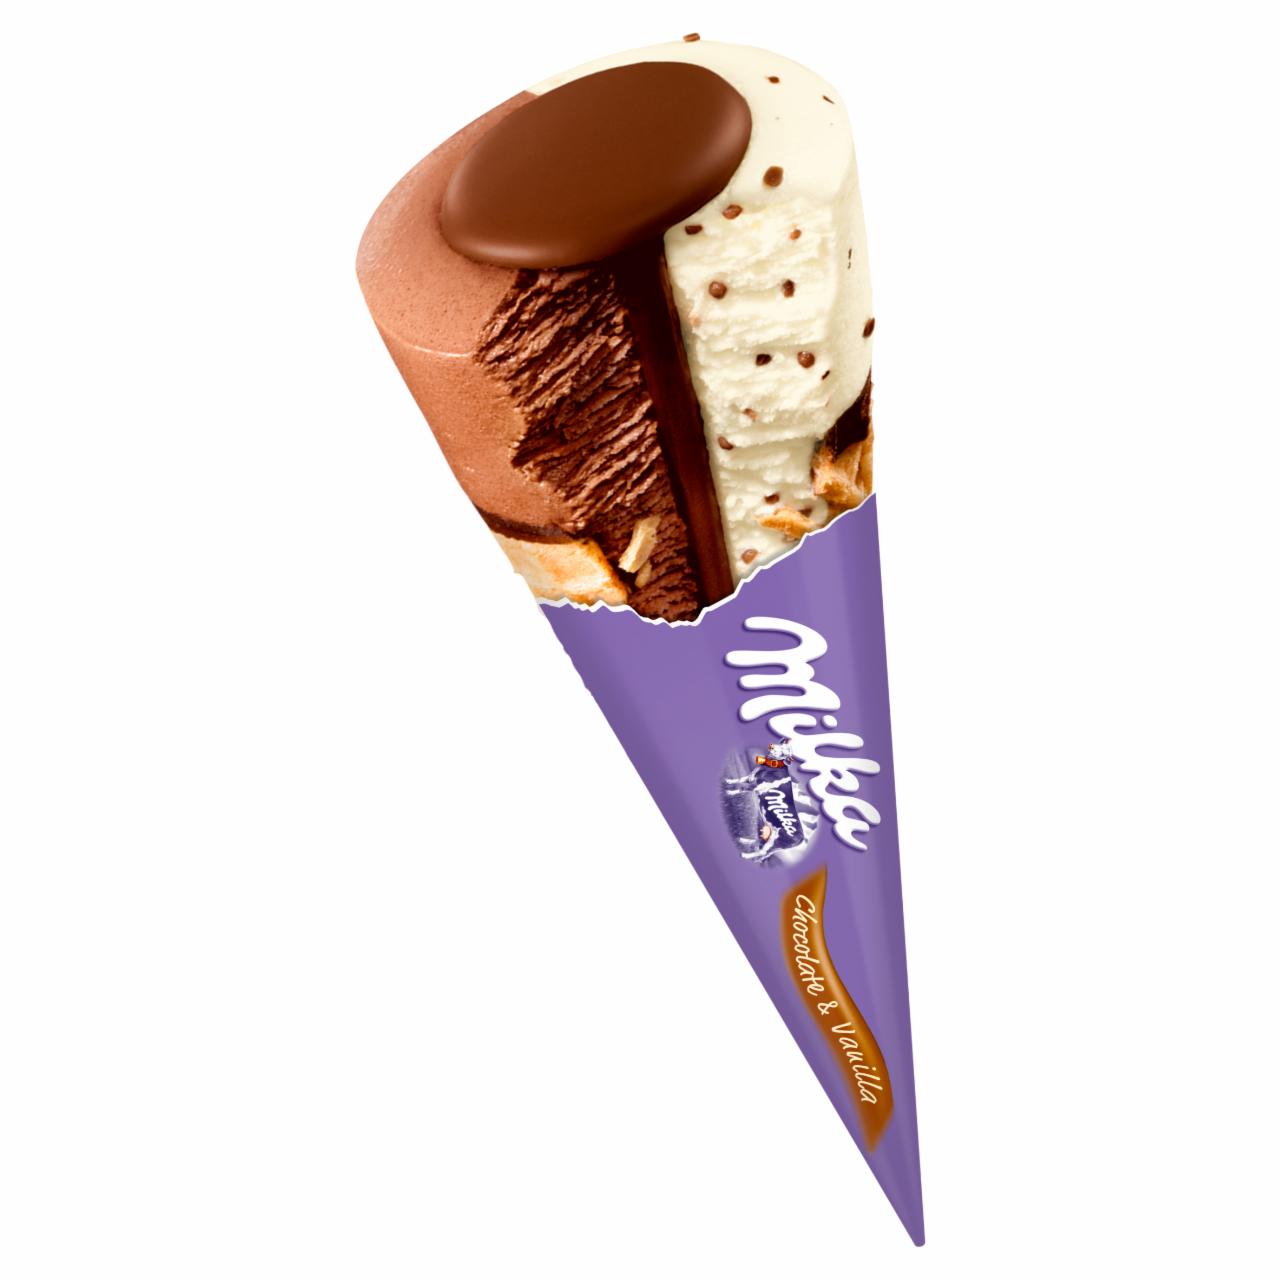 Zdjęcia - Milka Lody czekoladowe i lody waniliowe z kawałkami czekolady mlecznej w rożku waflowym 110 ml